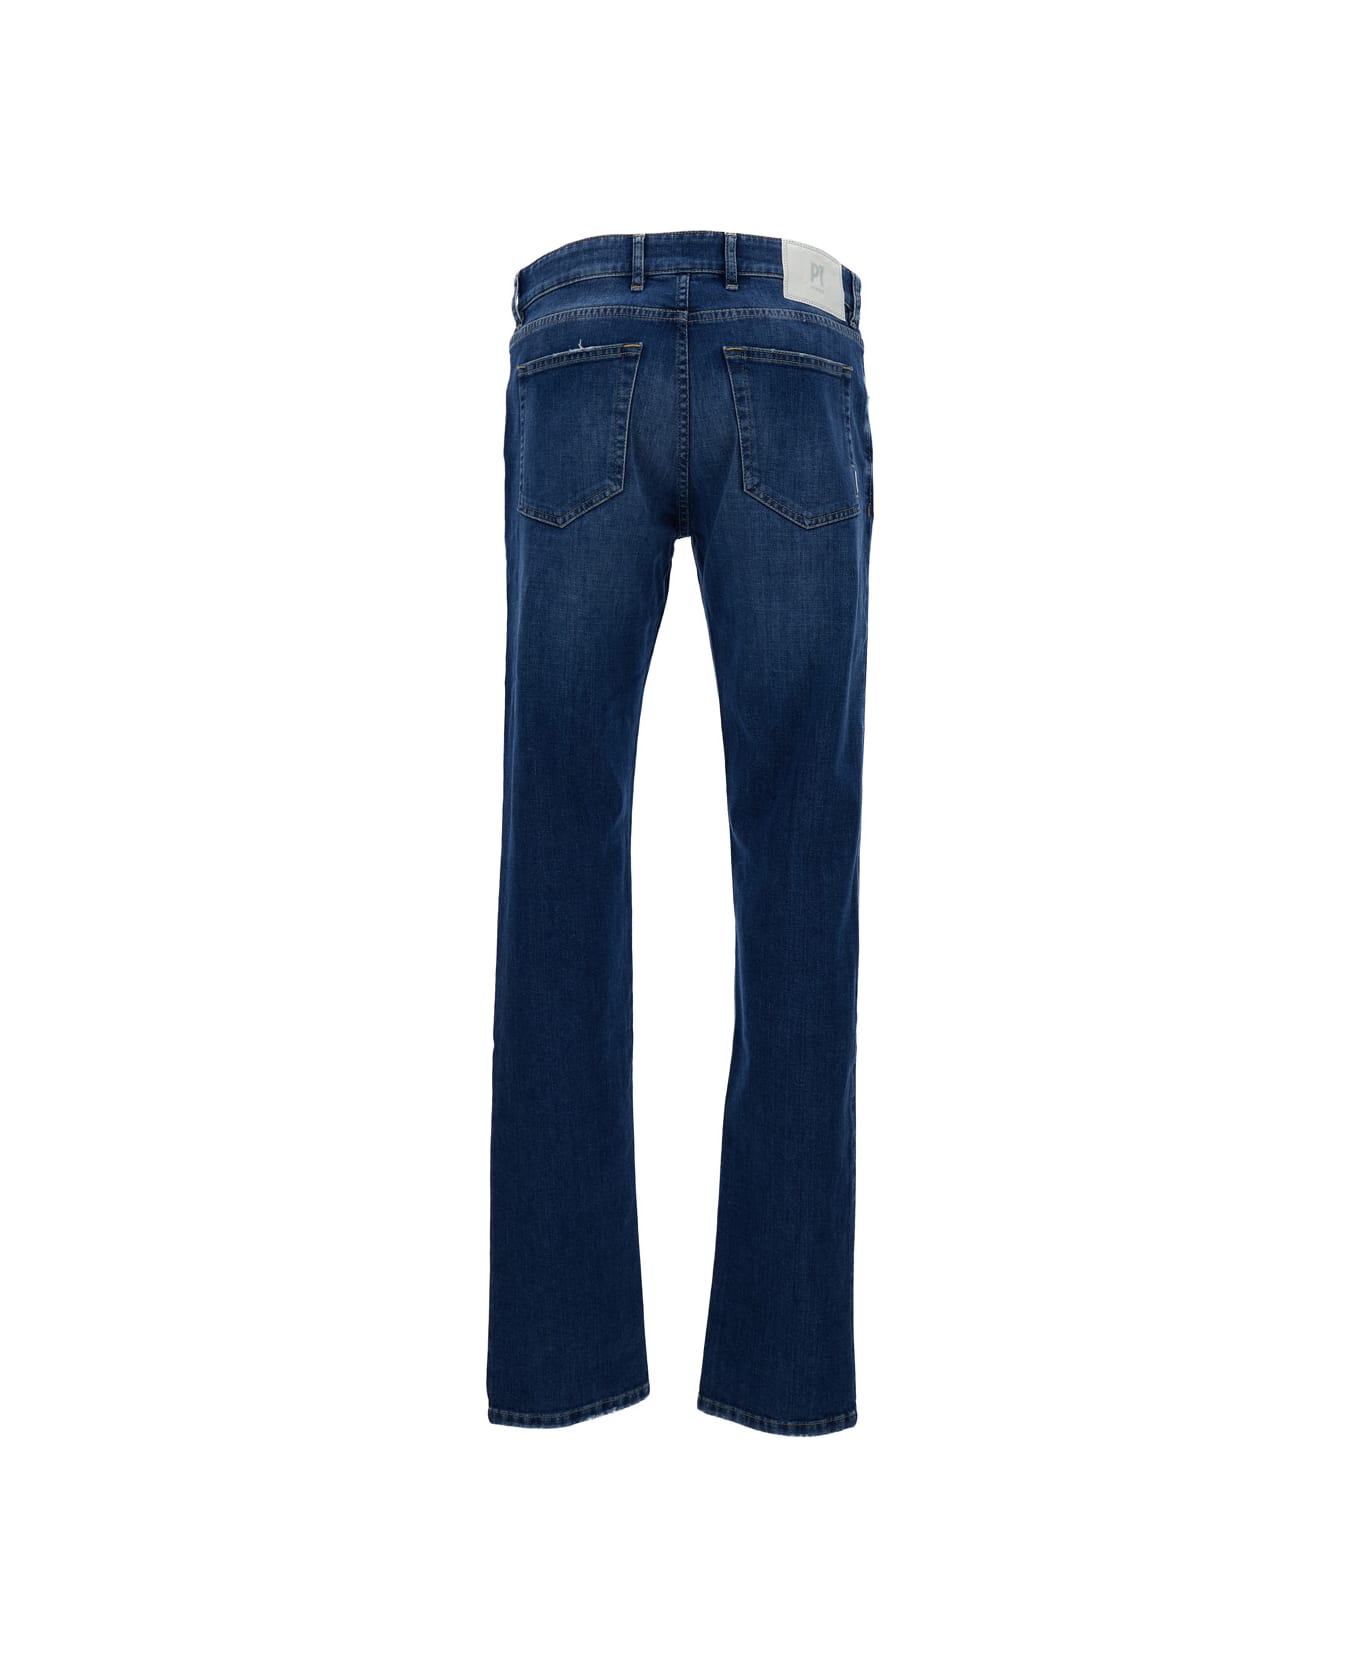 PT01 Dark Blue Medium Waist 'swing' Jeans In Cotton Blend Man - Blu デニム